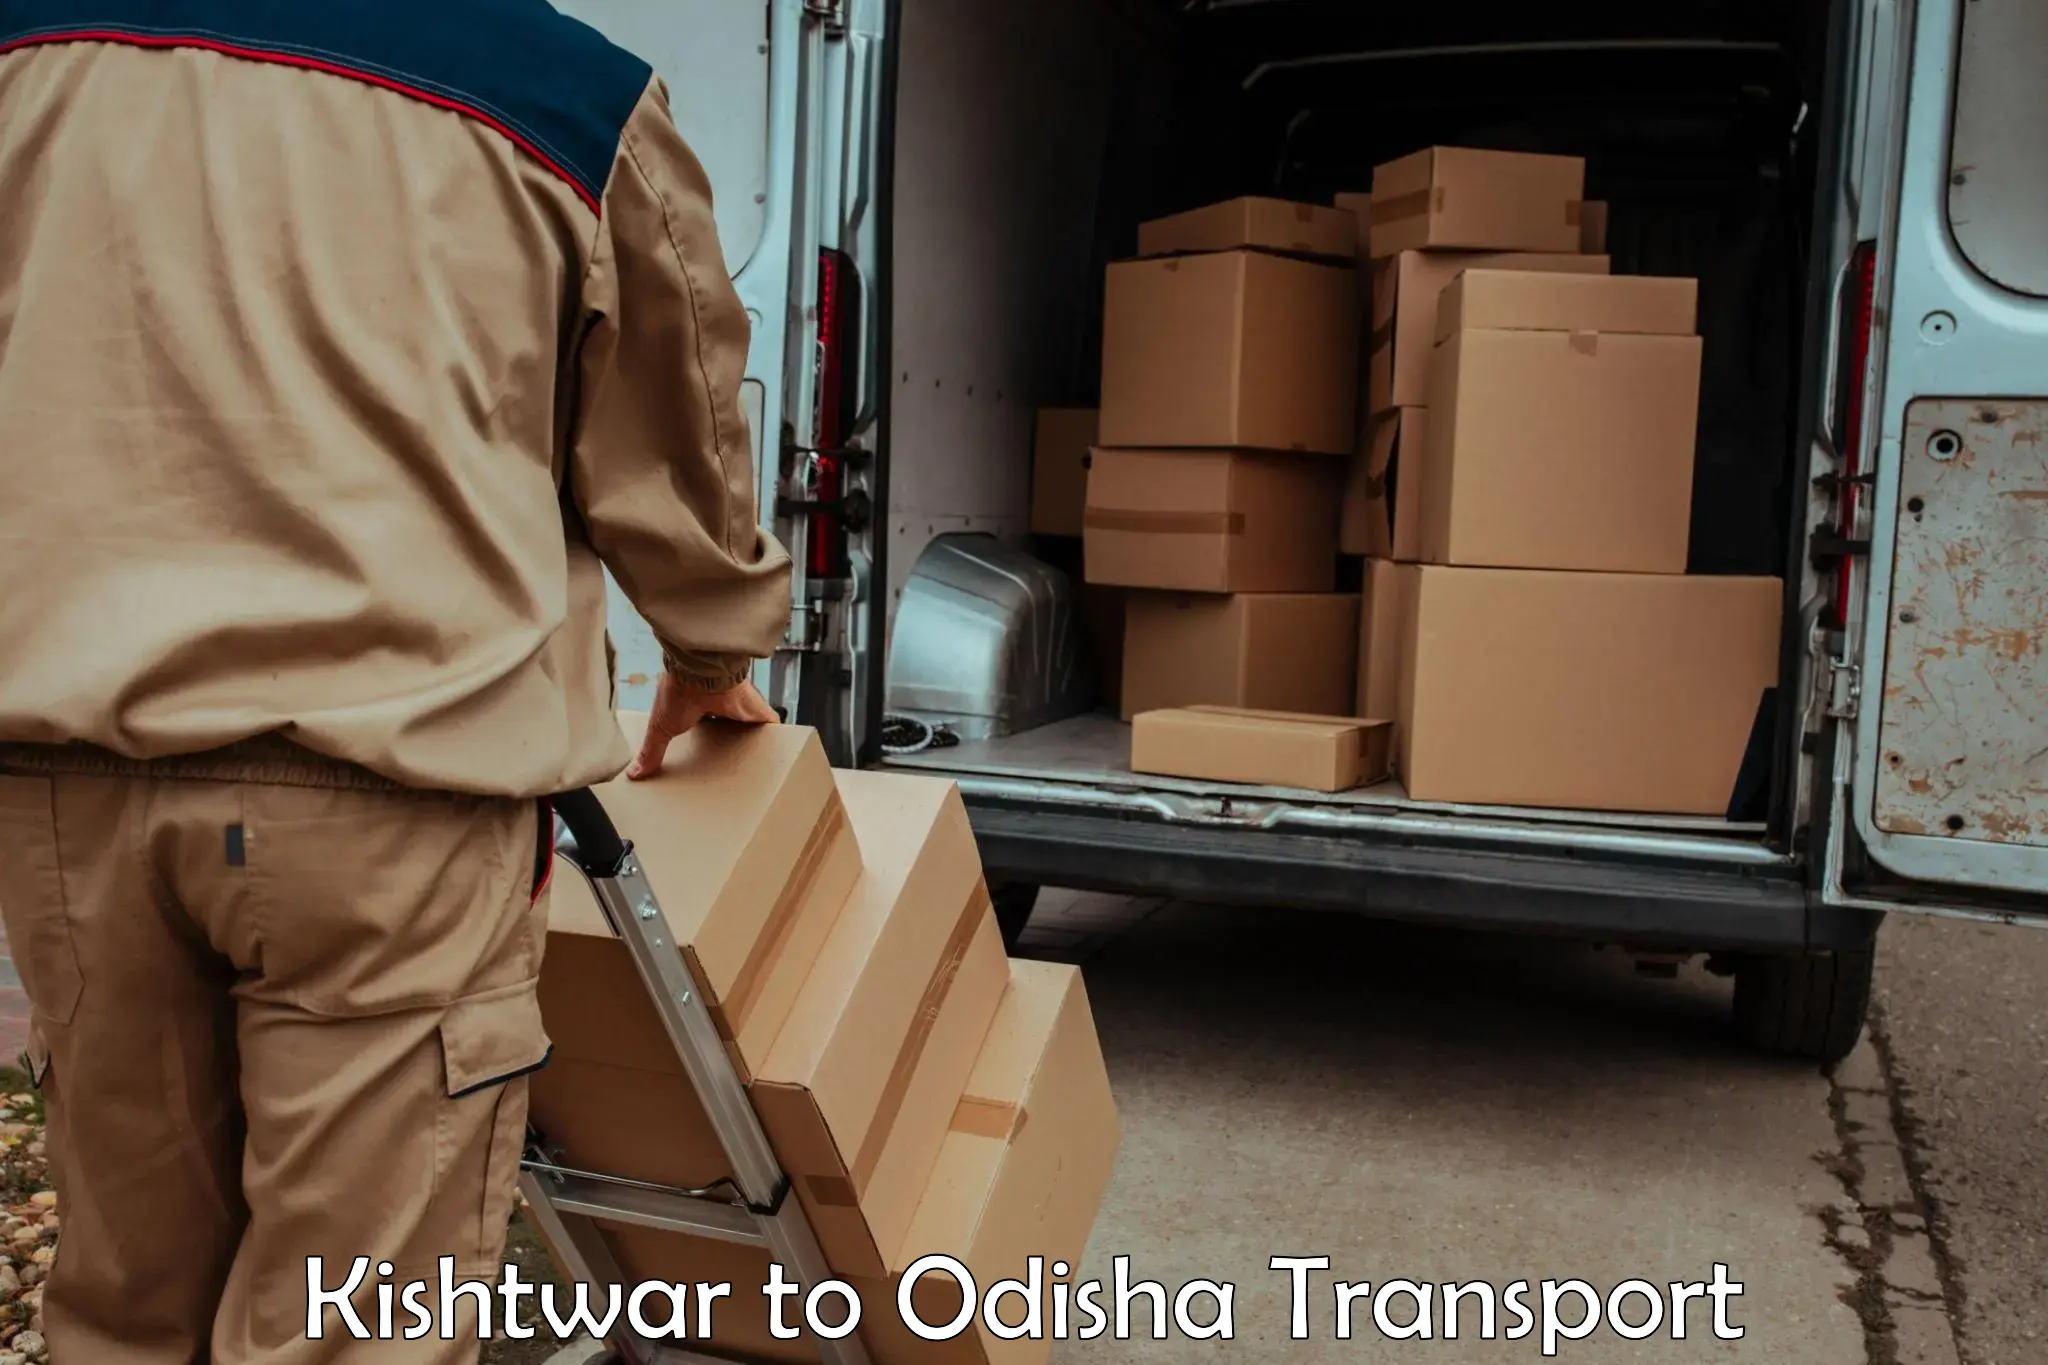 Bike shipping service Kishtwar to Sambalpur